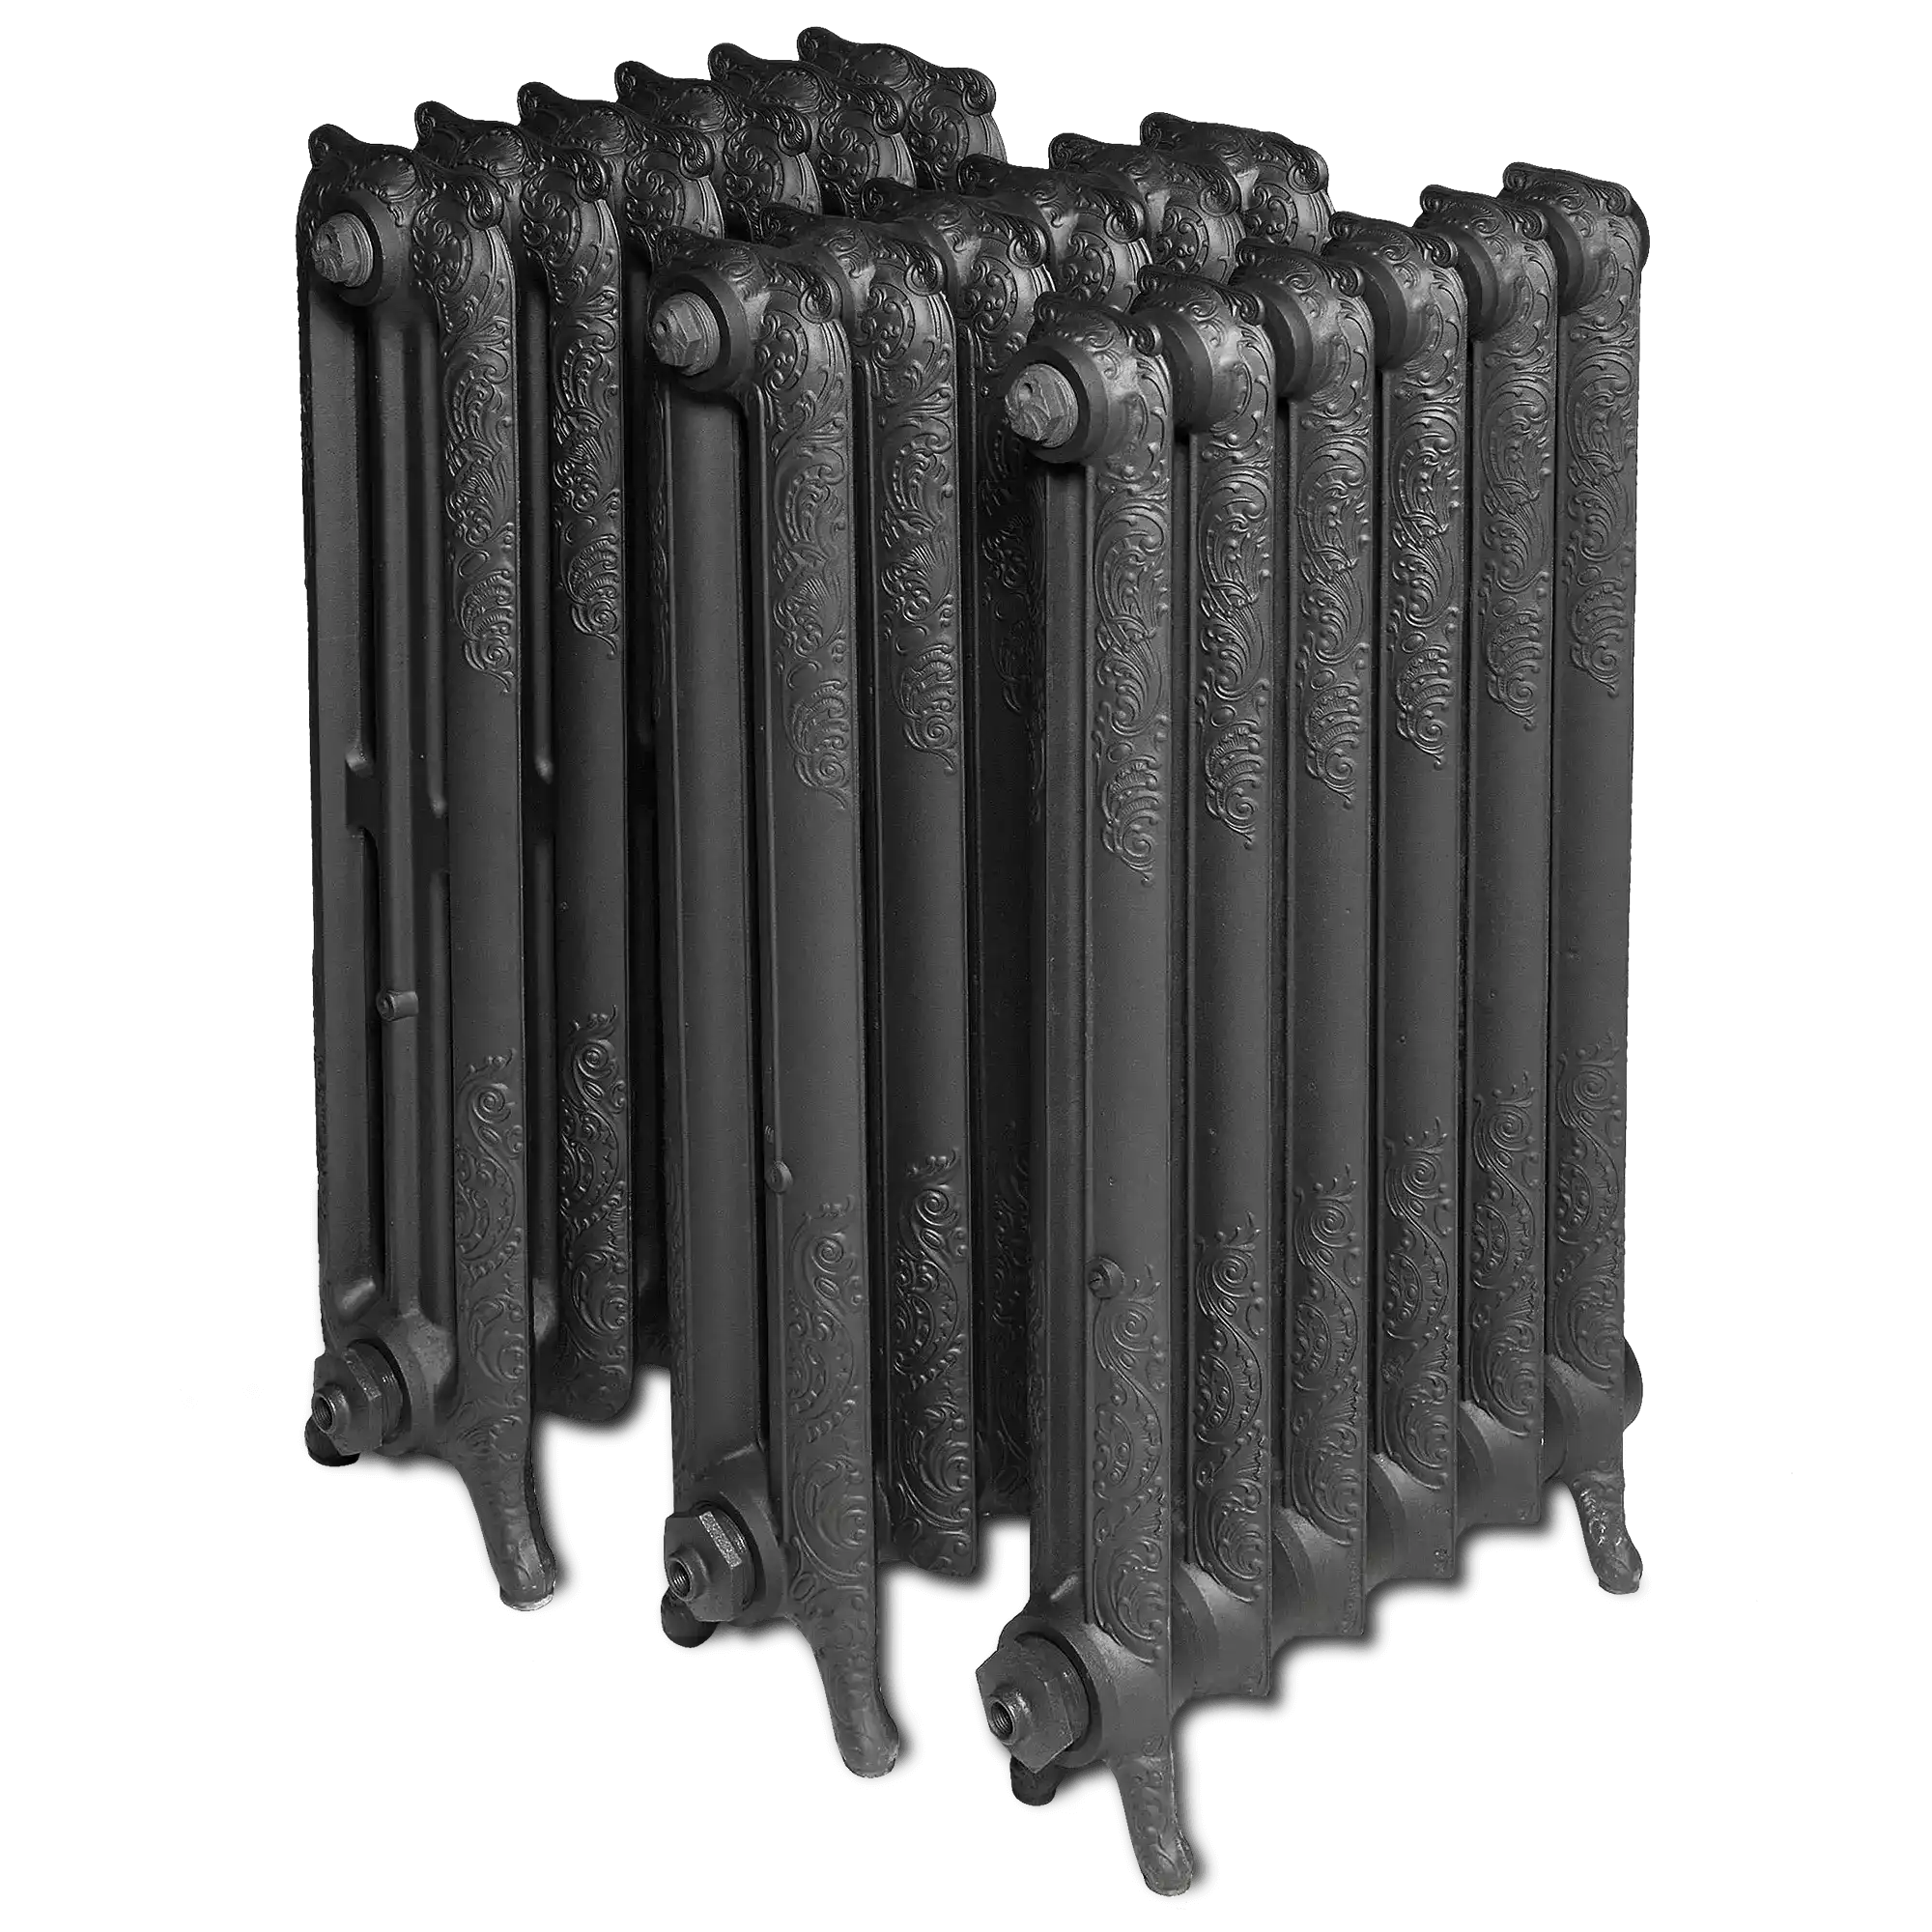 Decora Extrémité à pied de radiateur en fonte 2 Colonne 510x2052 Apprêt